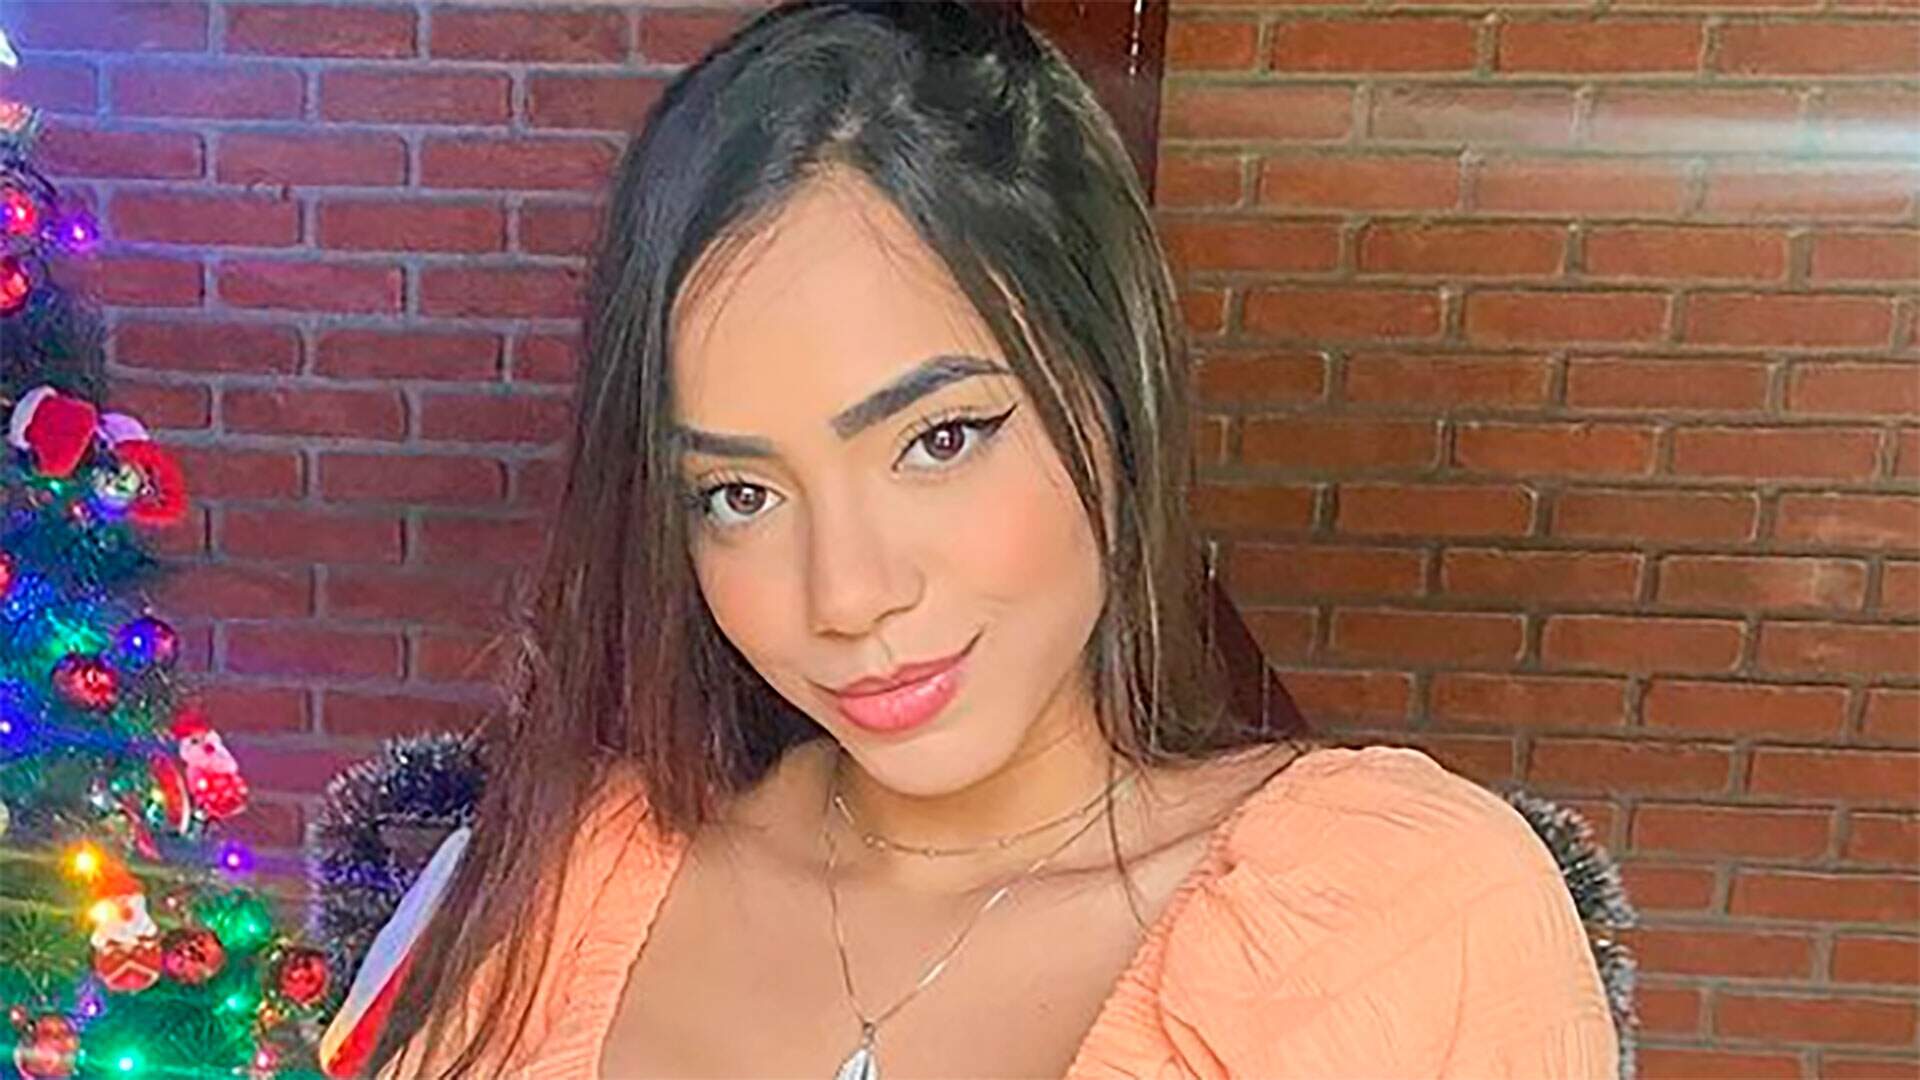 Gêmea Lacração, Mariely Santos, aparece irreconhecível no Instagram e choca seguidores - Metropolitana FM